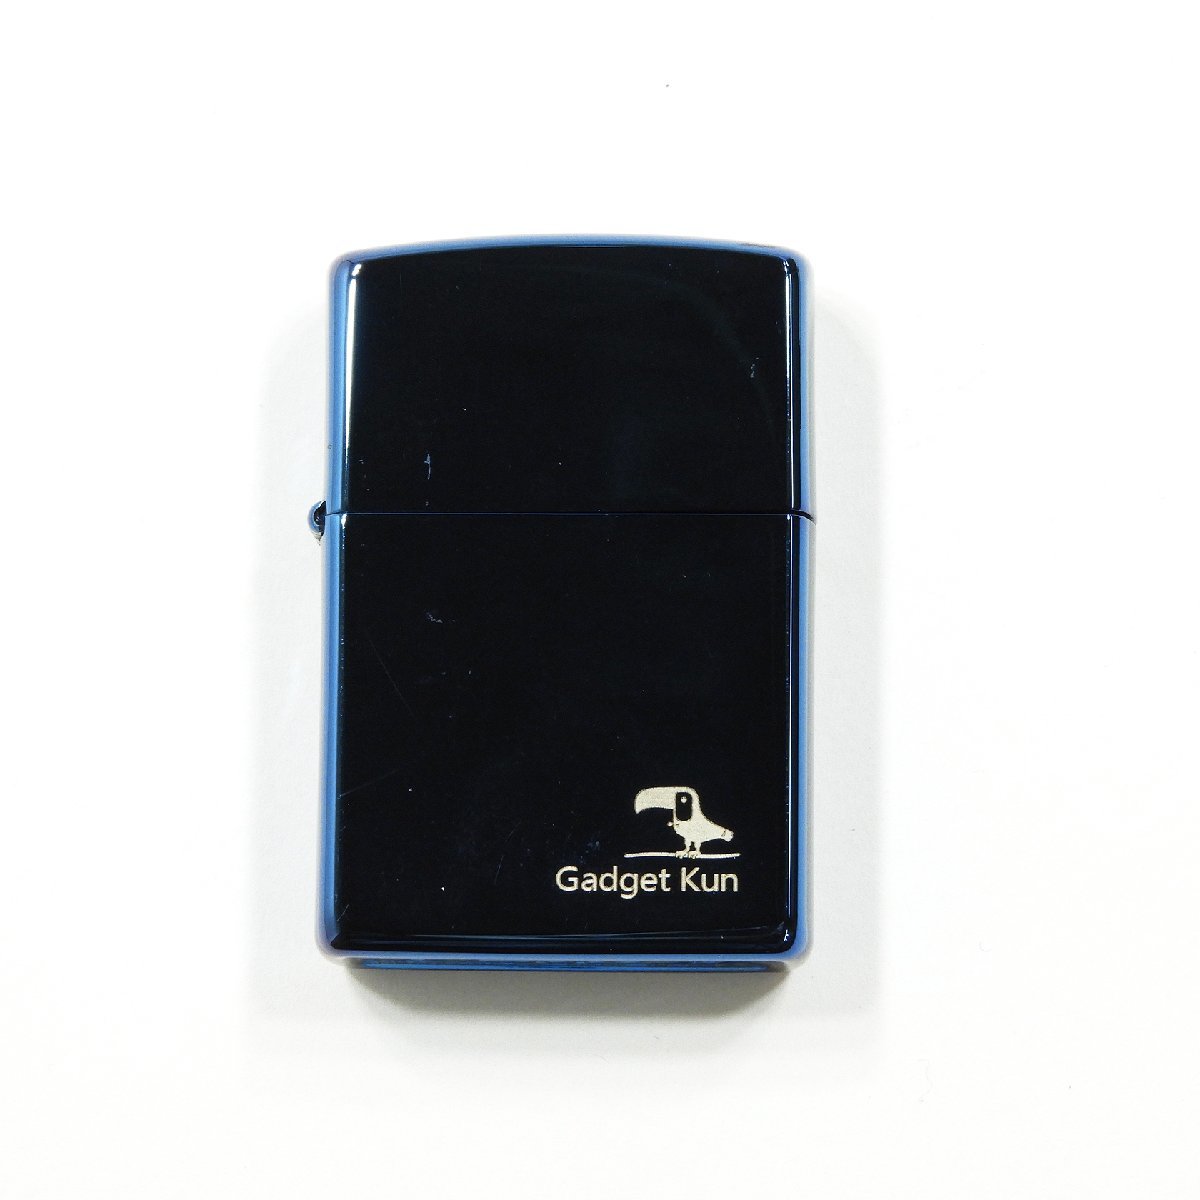 ZIPPOライター J19 gadget kun MADE IN USA メタリックブルー kt1132 #15395 送料360円 オイルライター 喫煙 趣味_画像3